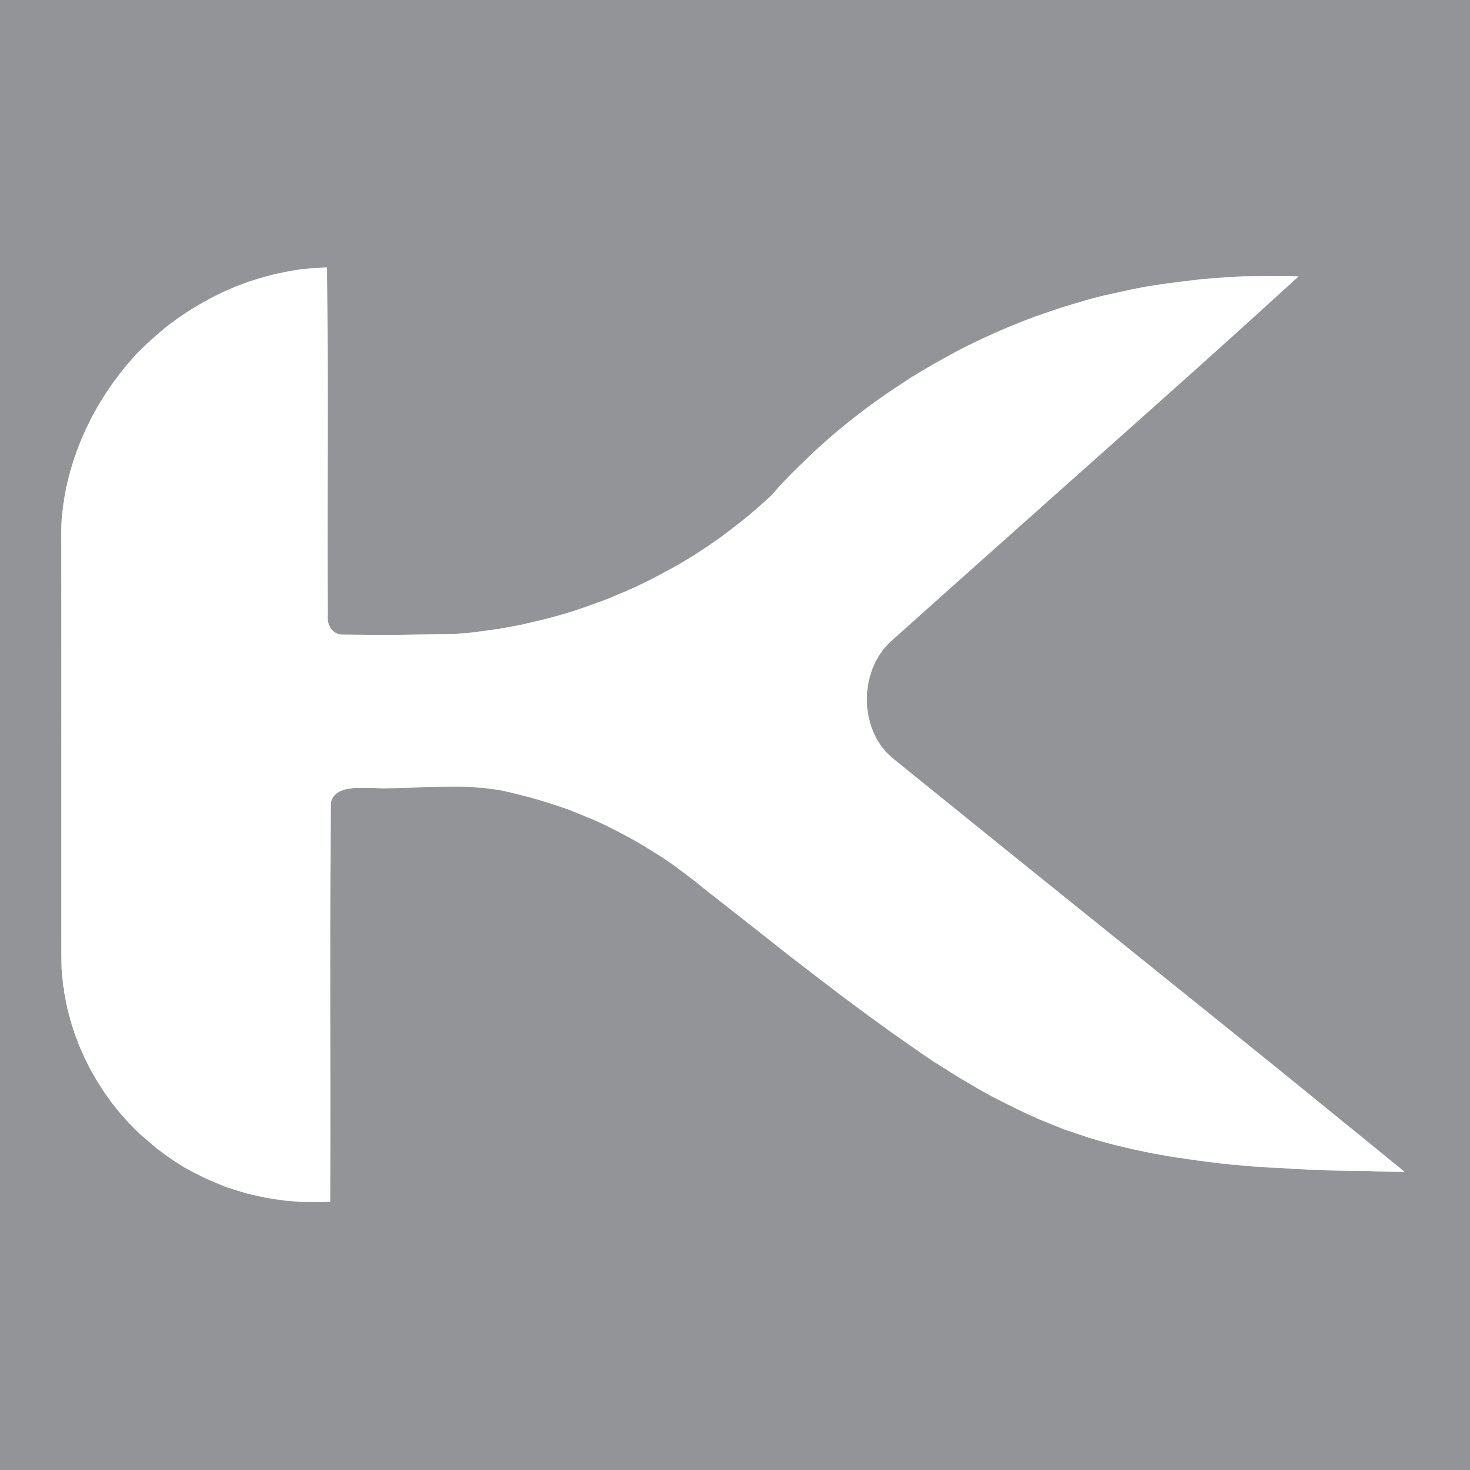 Kokuyo logo (PNG transparent)